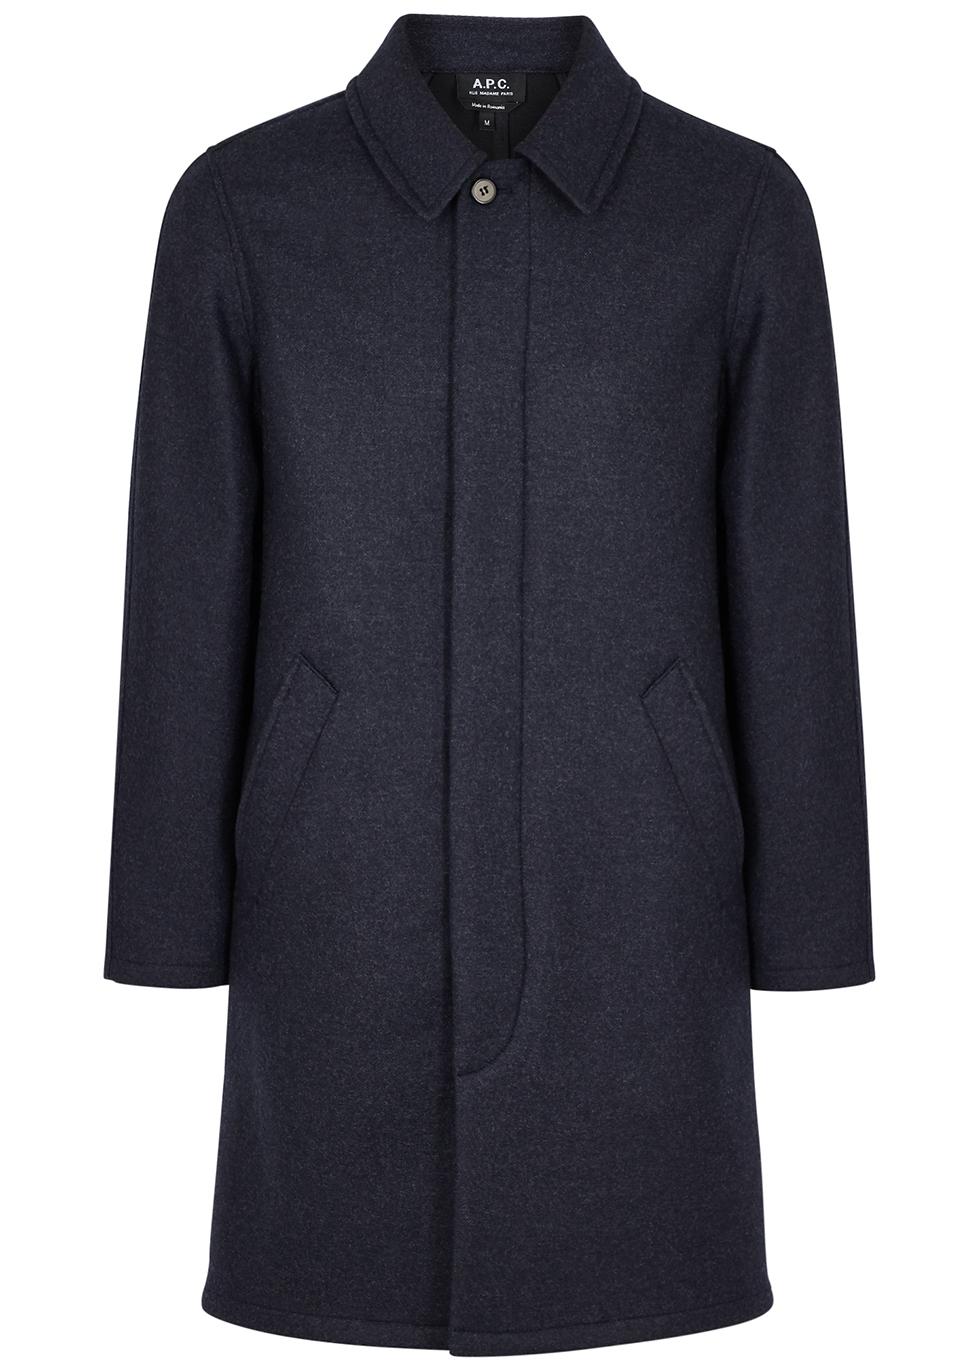 A.P.C. Julian Navy Wool-blend Coat in Blue for Men - Lyst